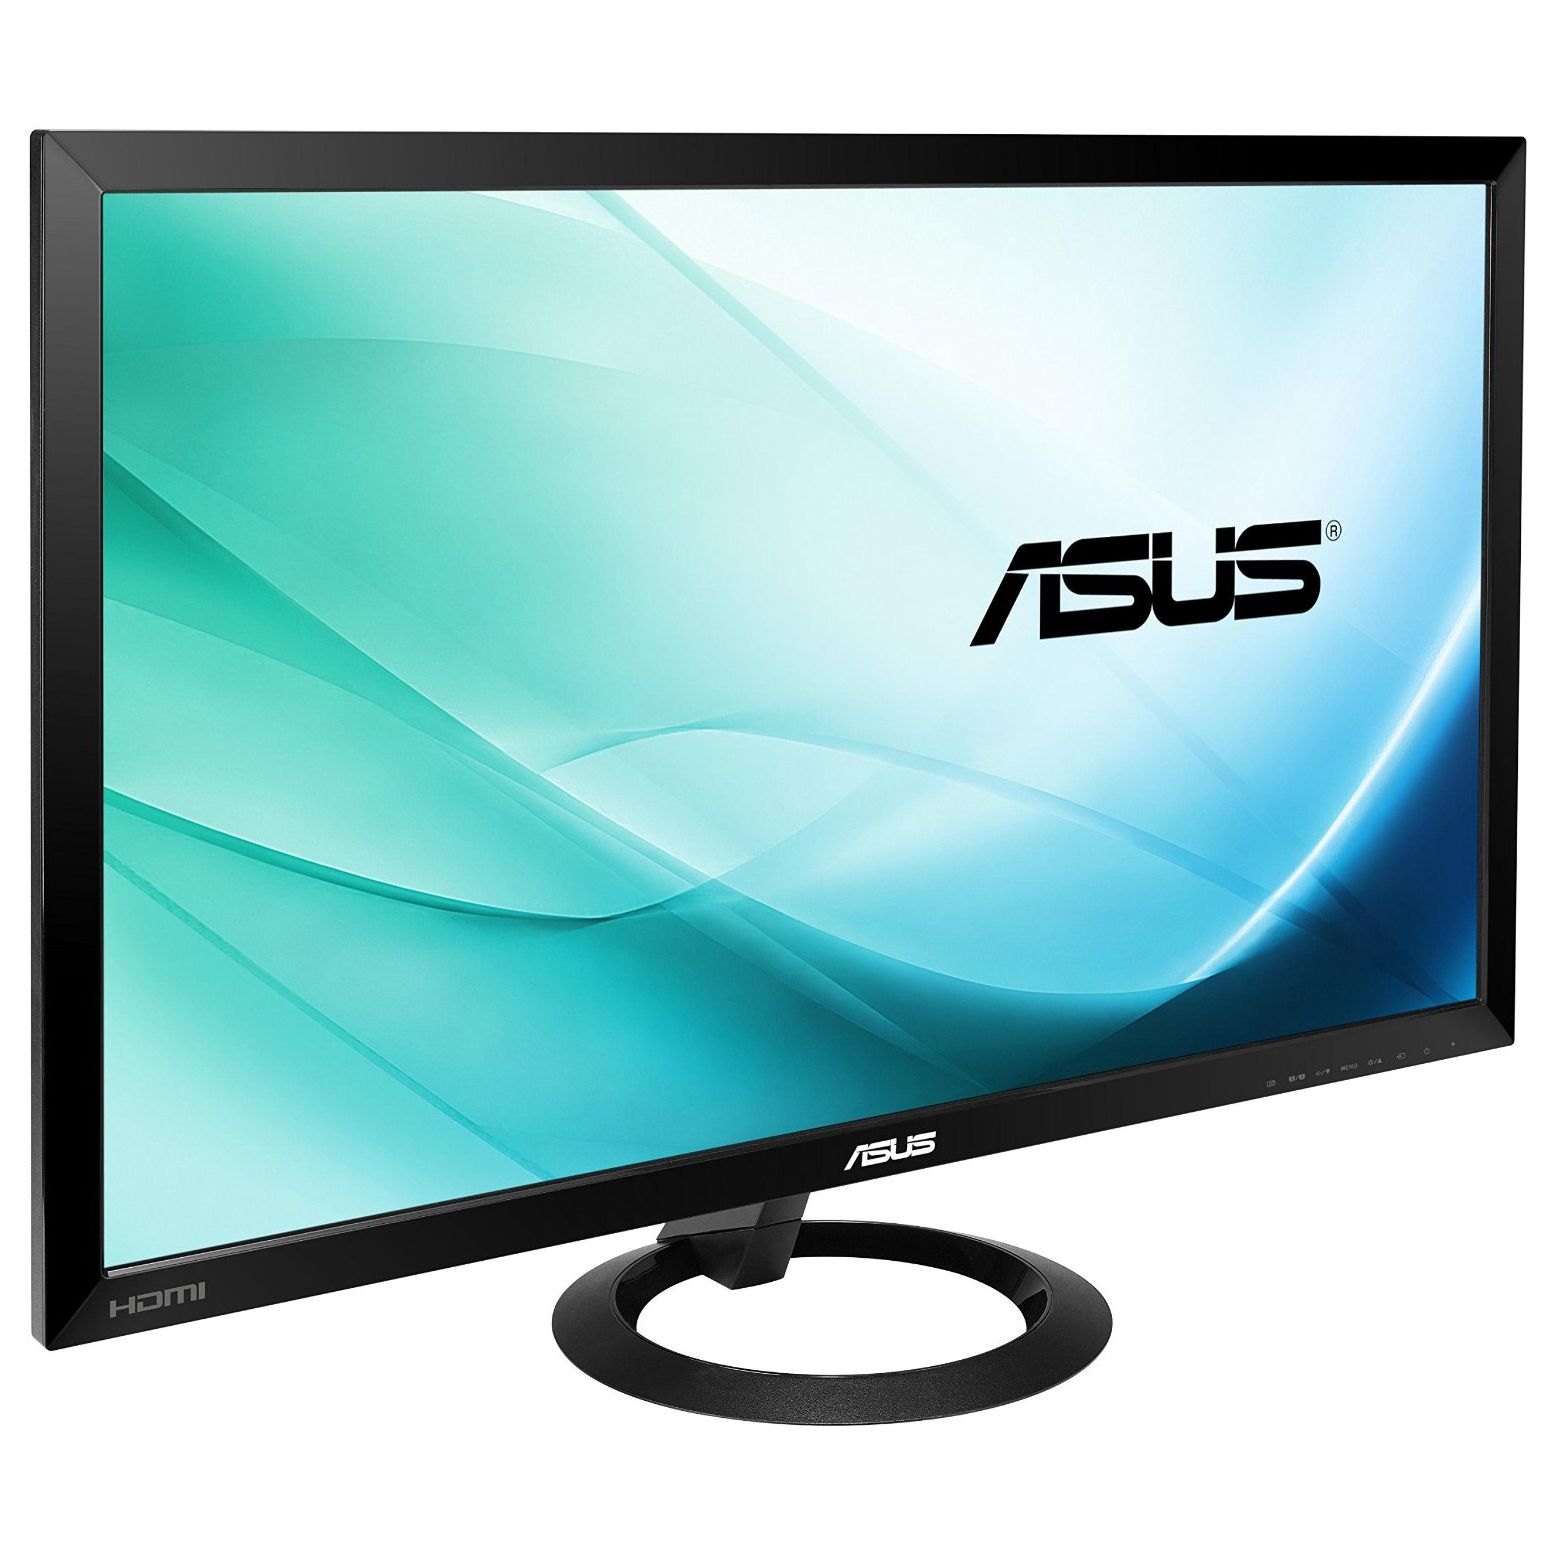  Monitor LED Asus VX278H, 27", Full HD, Negru 